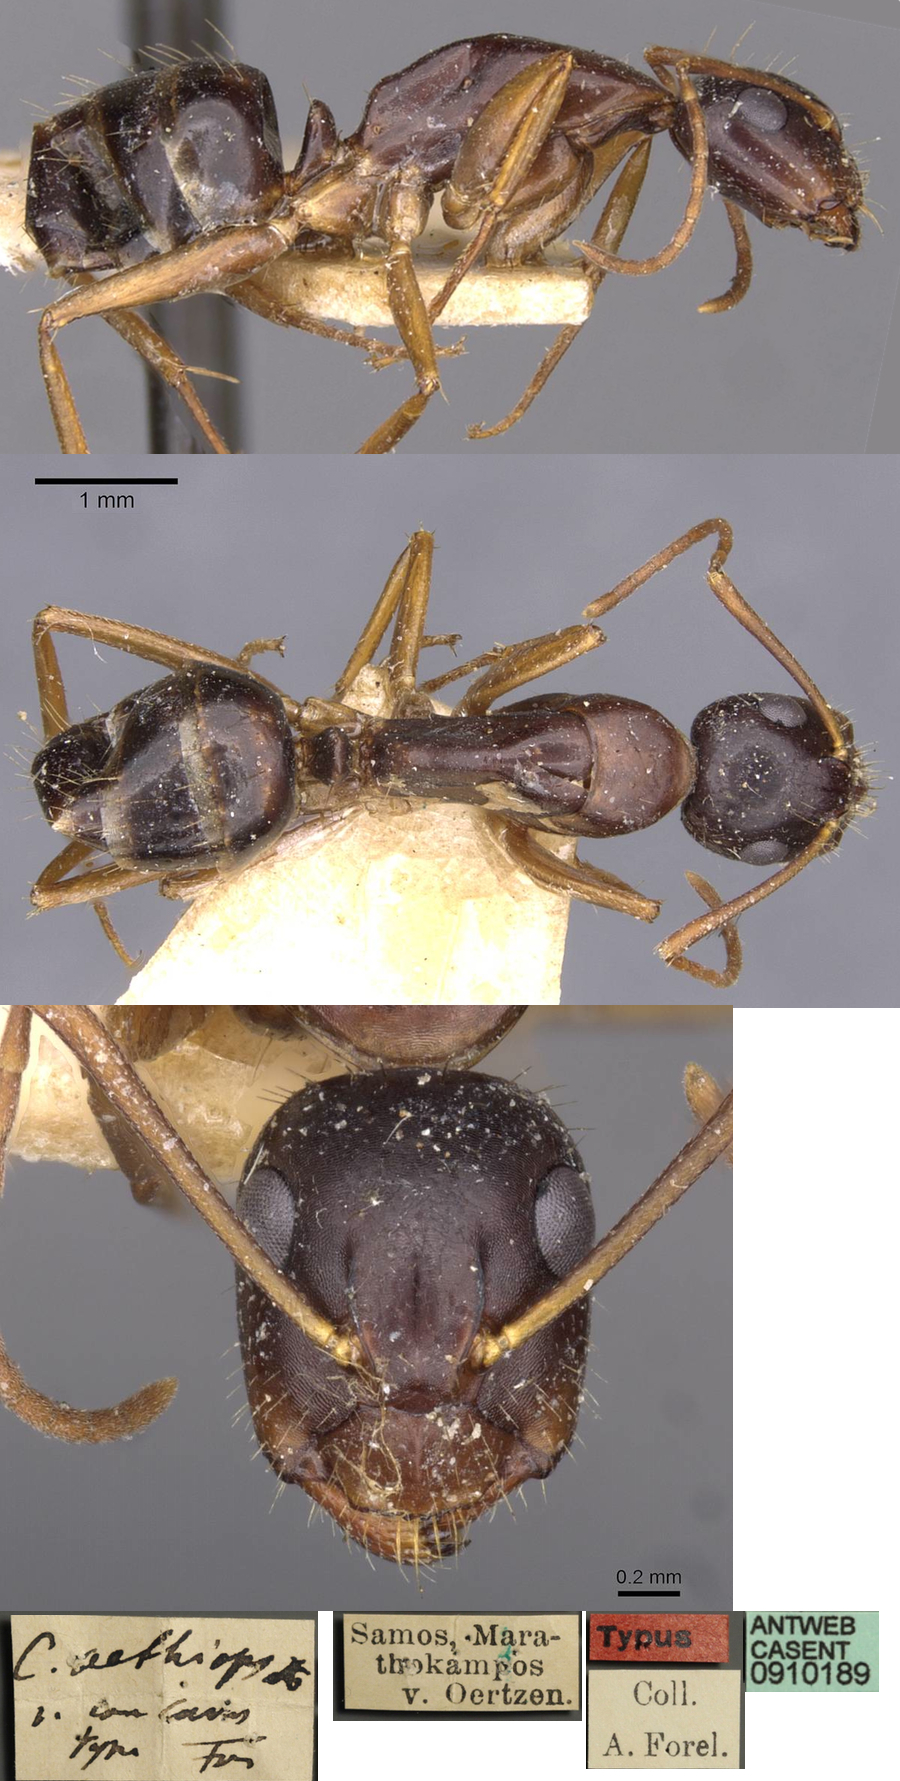 Camponotus aethiops concava minor